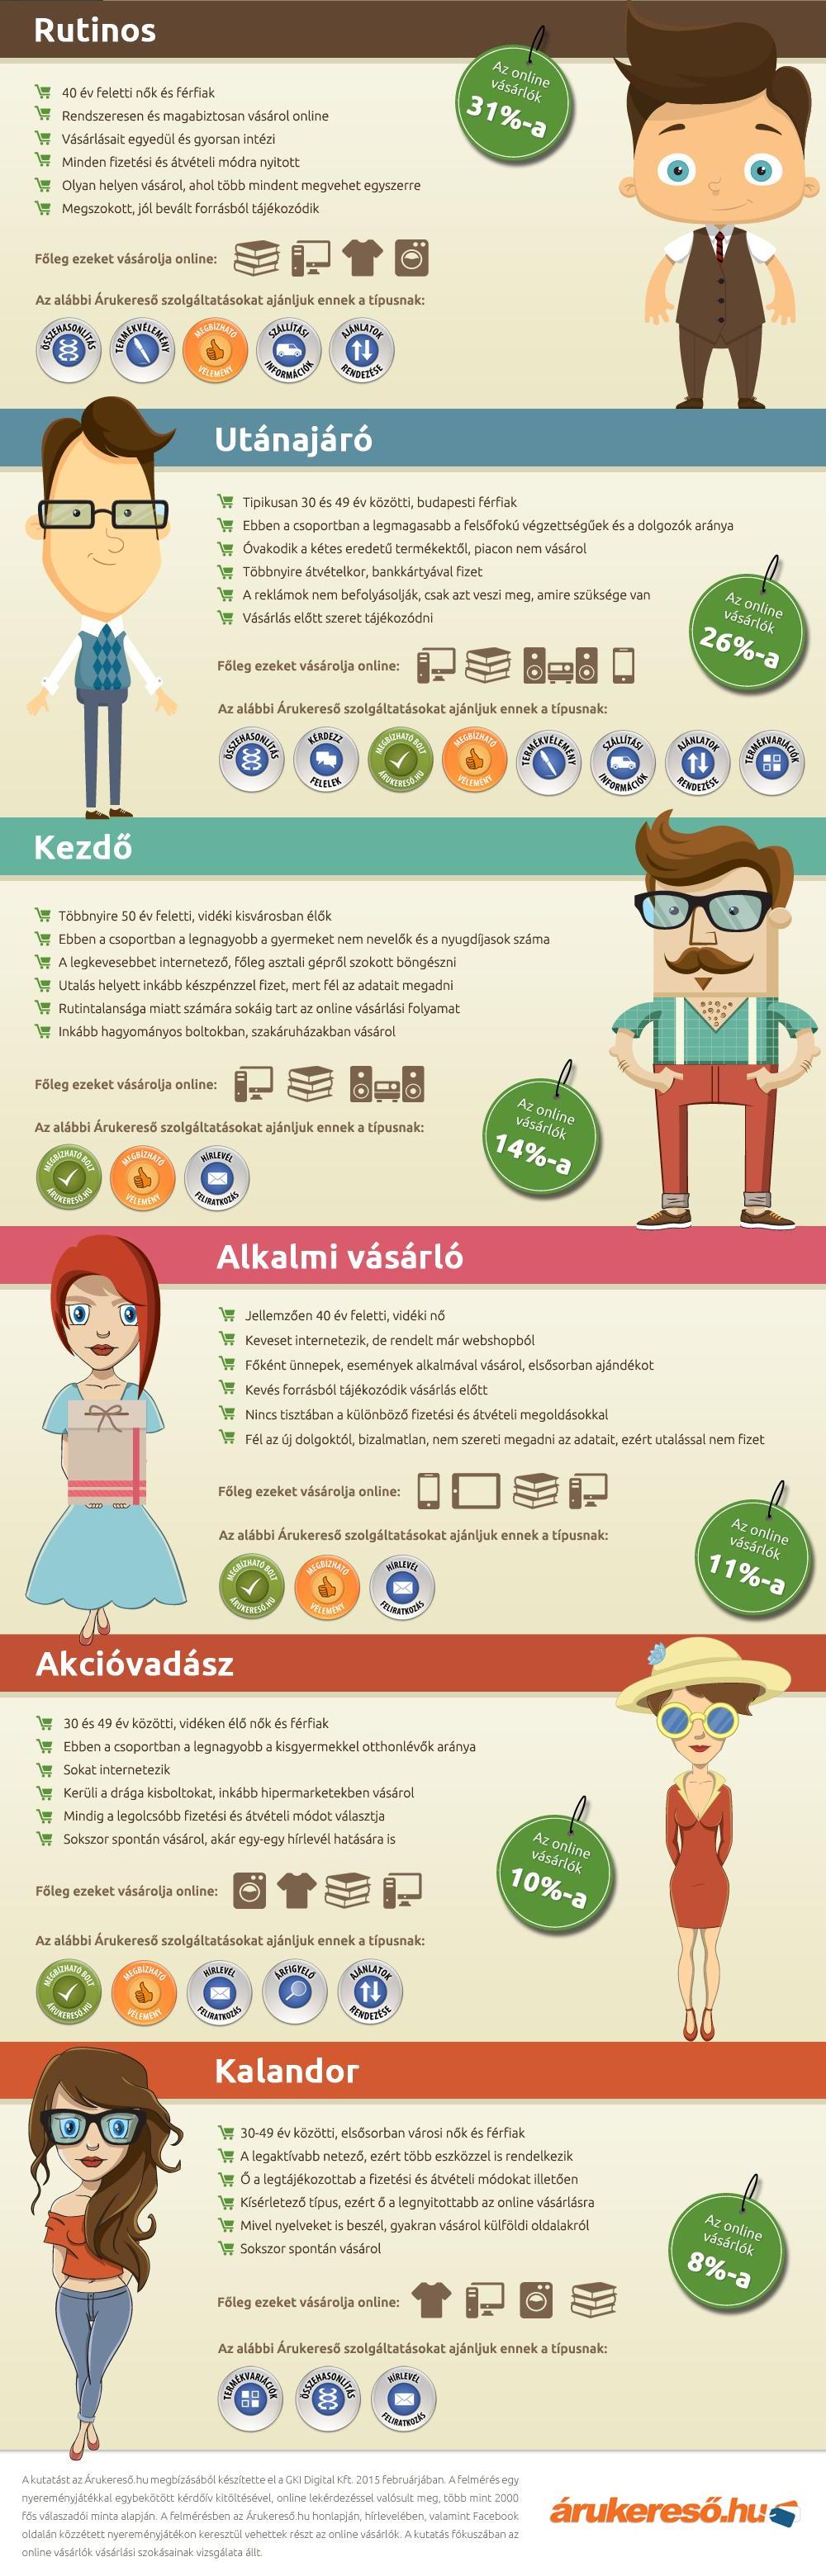 online_vasarlas_infographic2